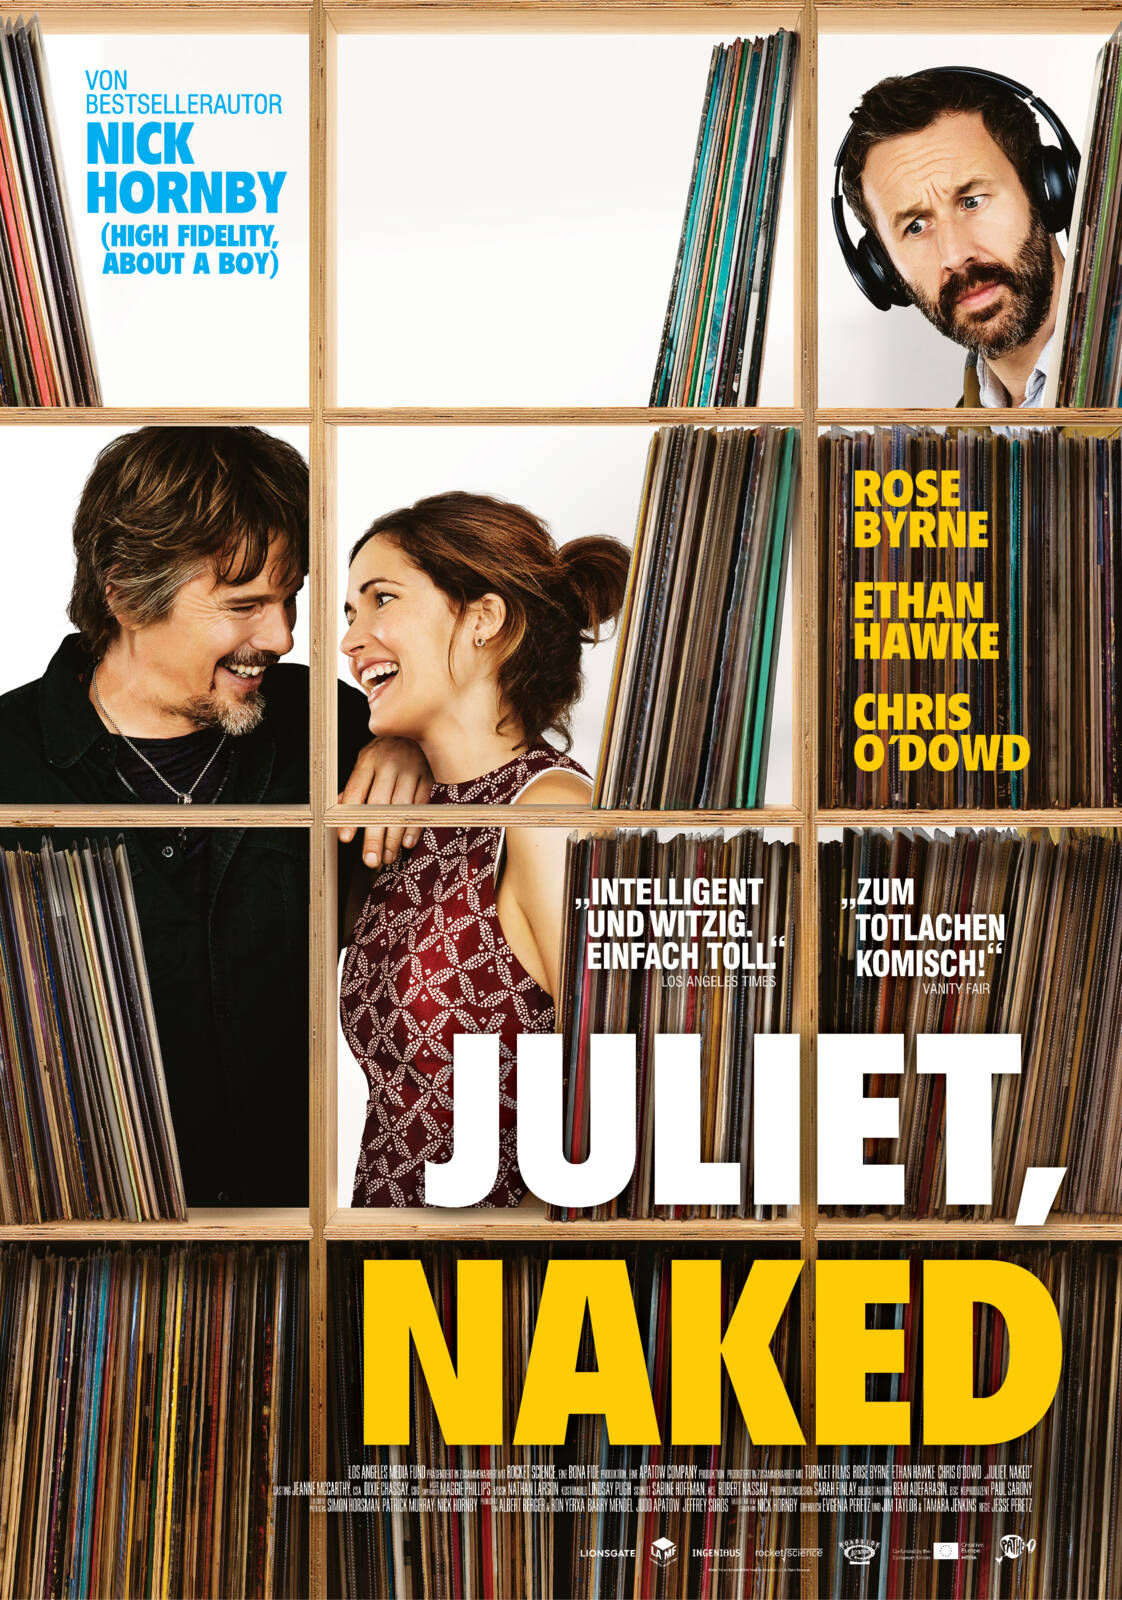 Juliet, Naked (2018)